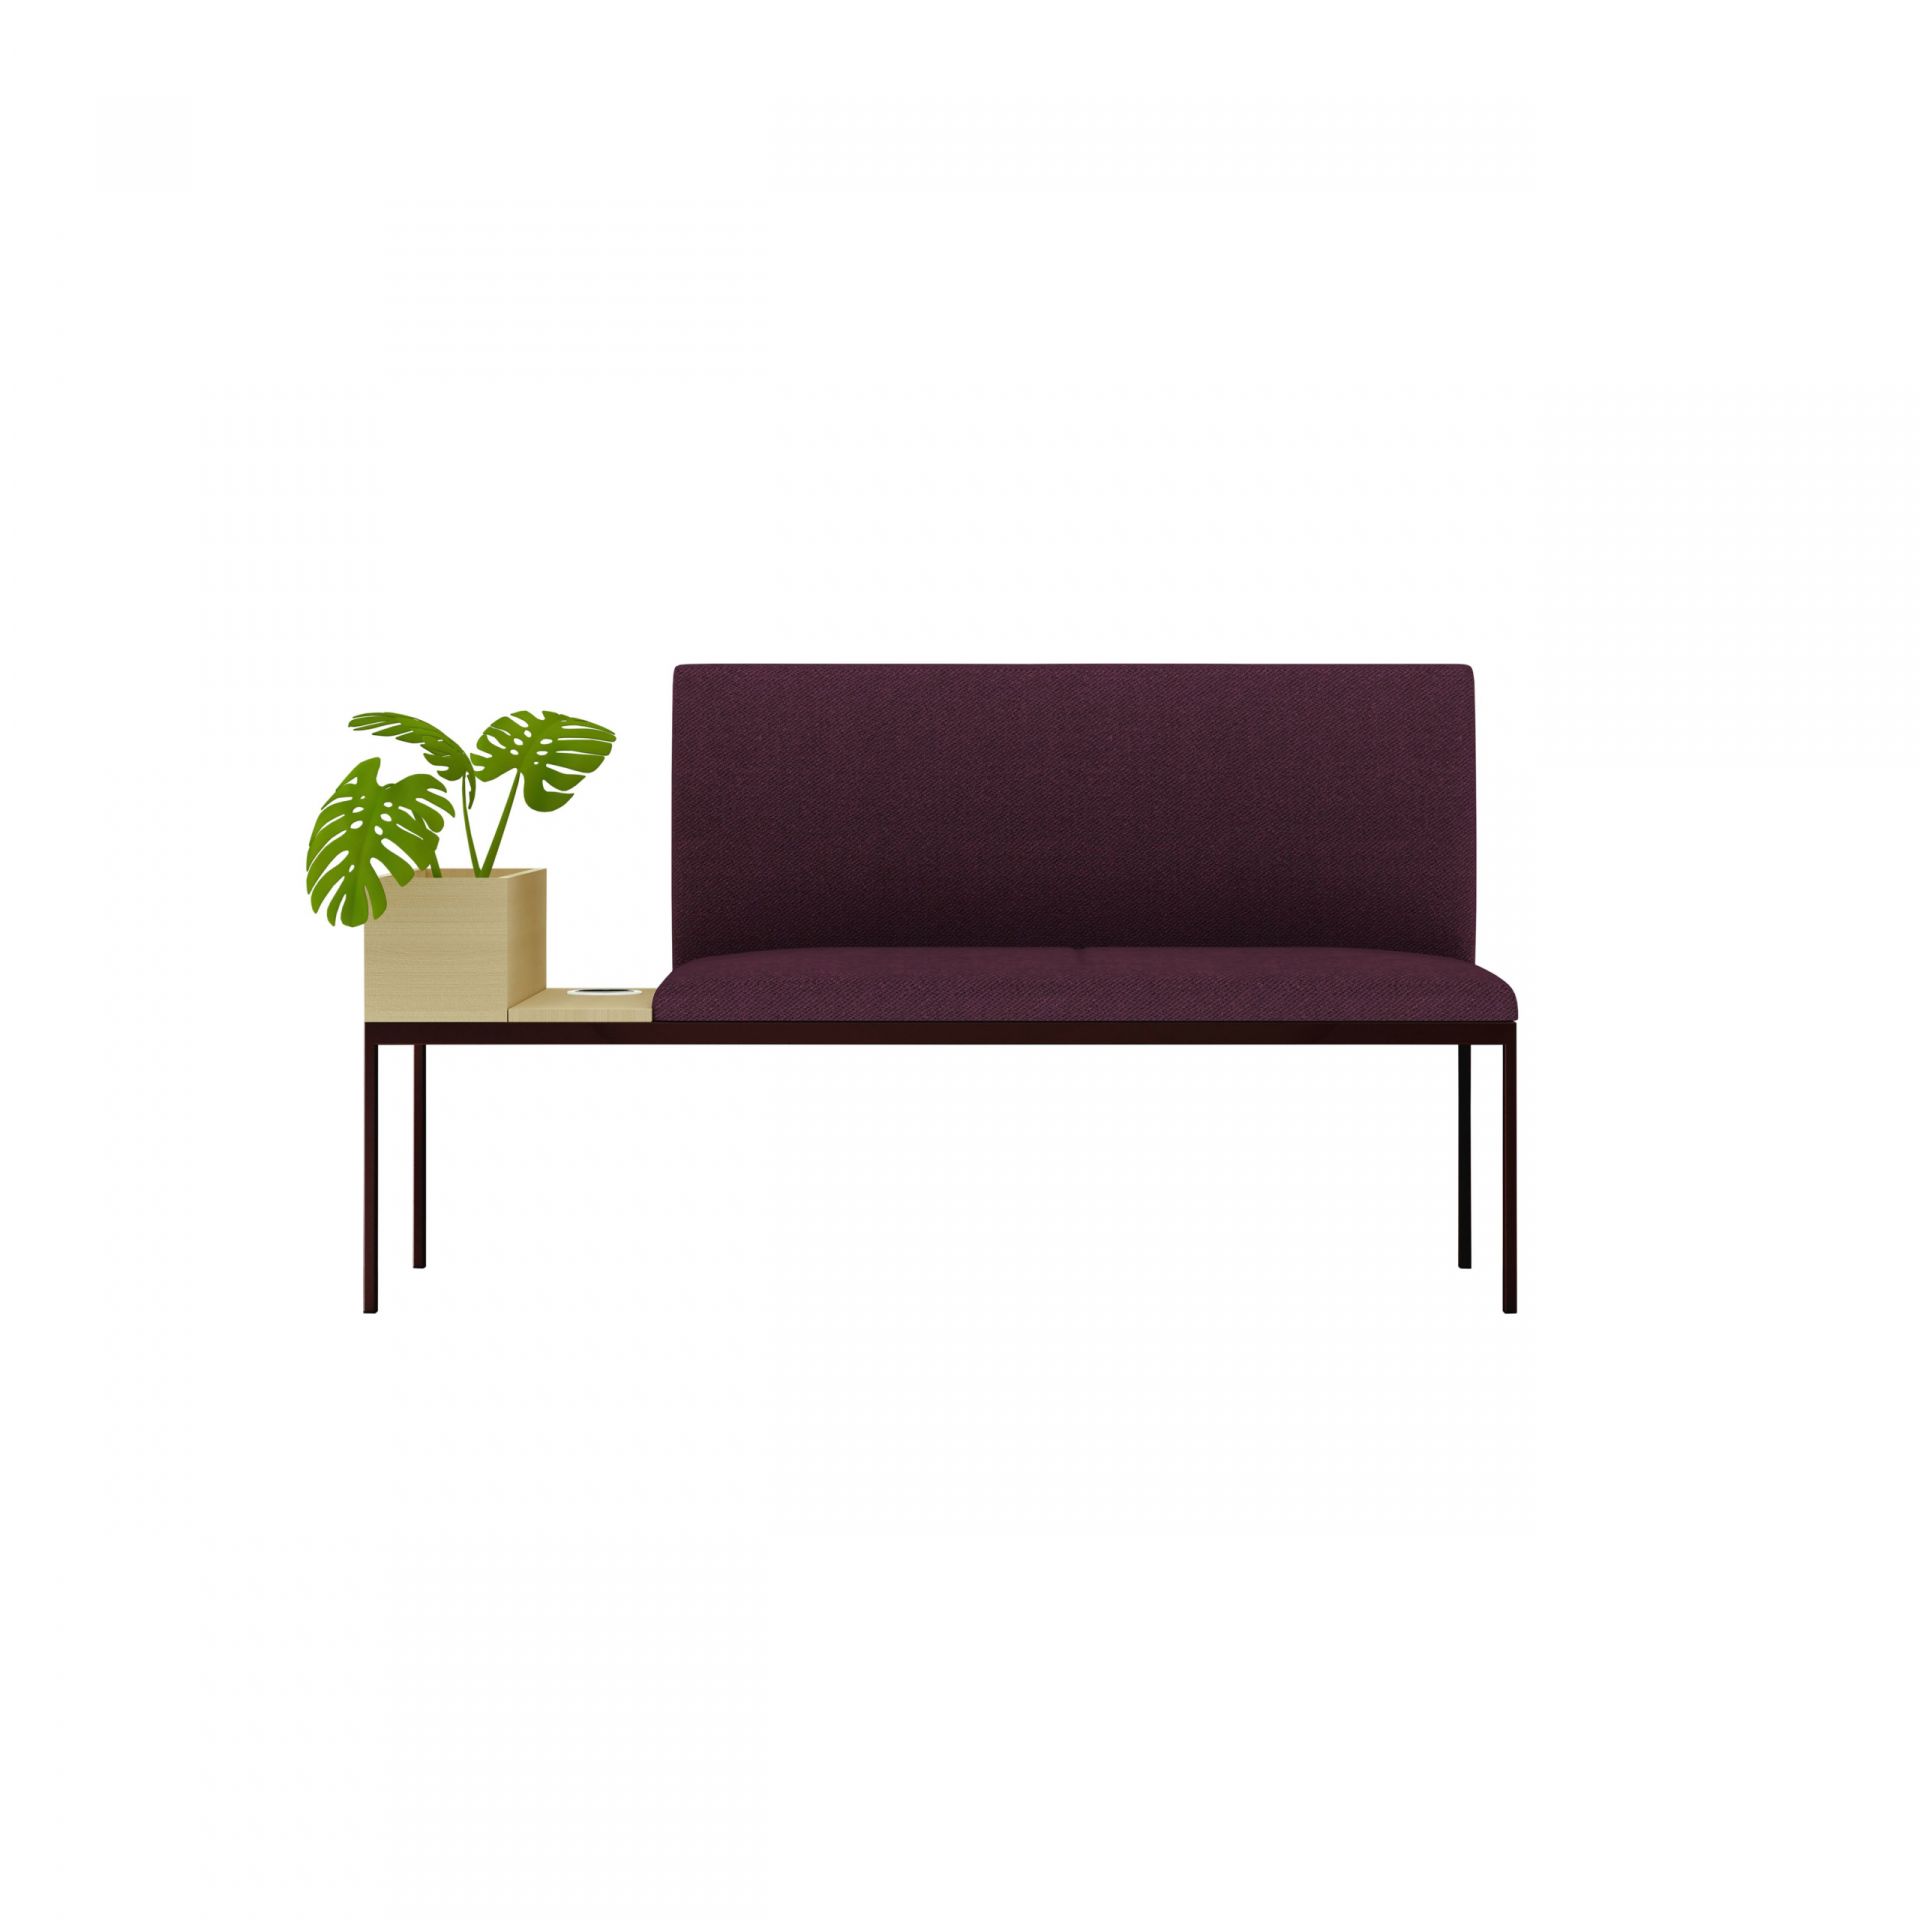 Create Seating Byggbara moduler: sittmöbler, förvaring och rum-i rum thumbnail bild 2